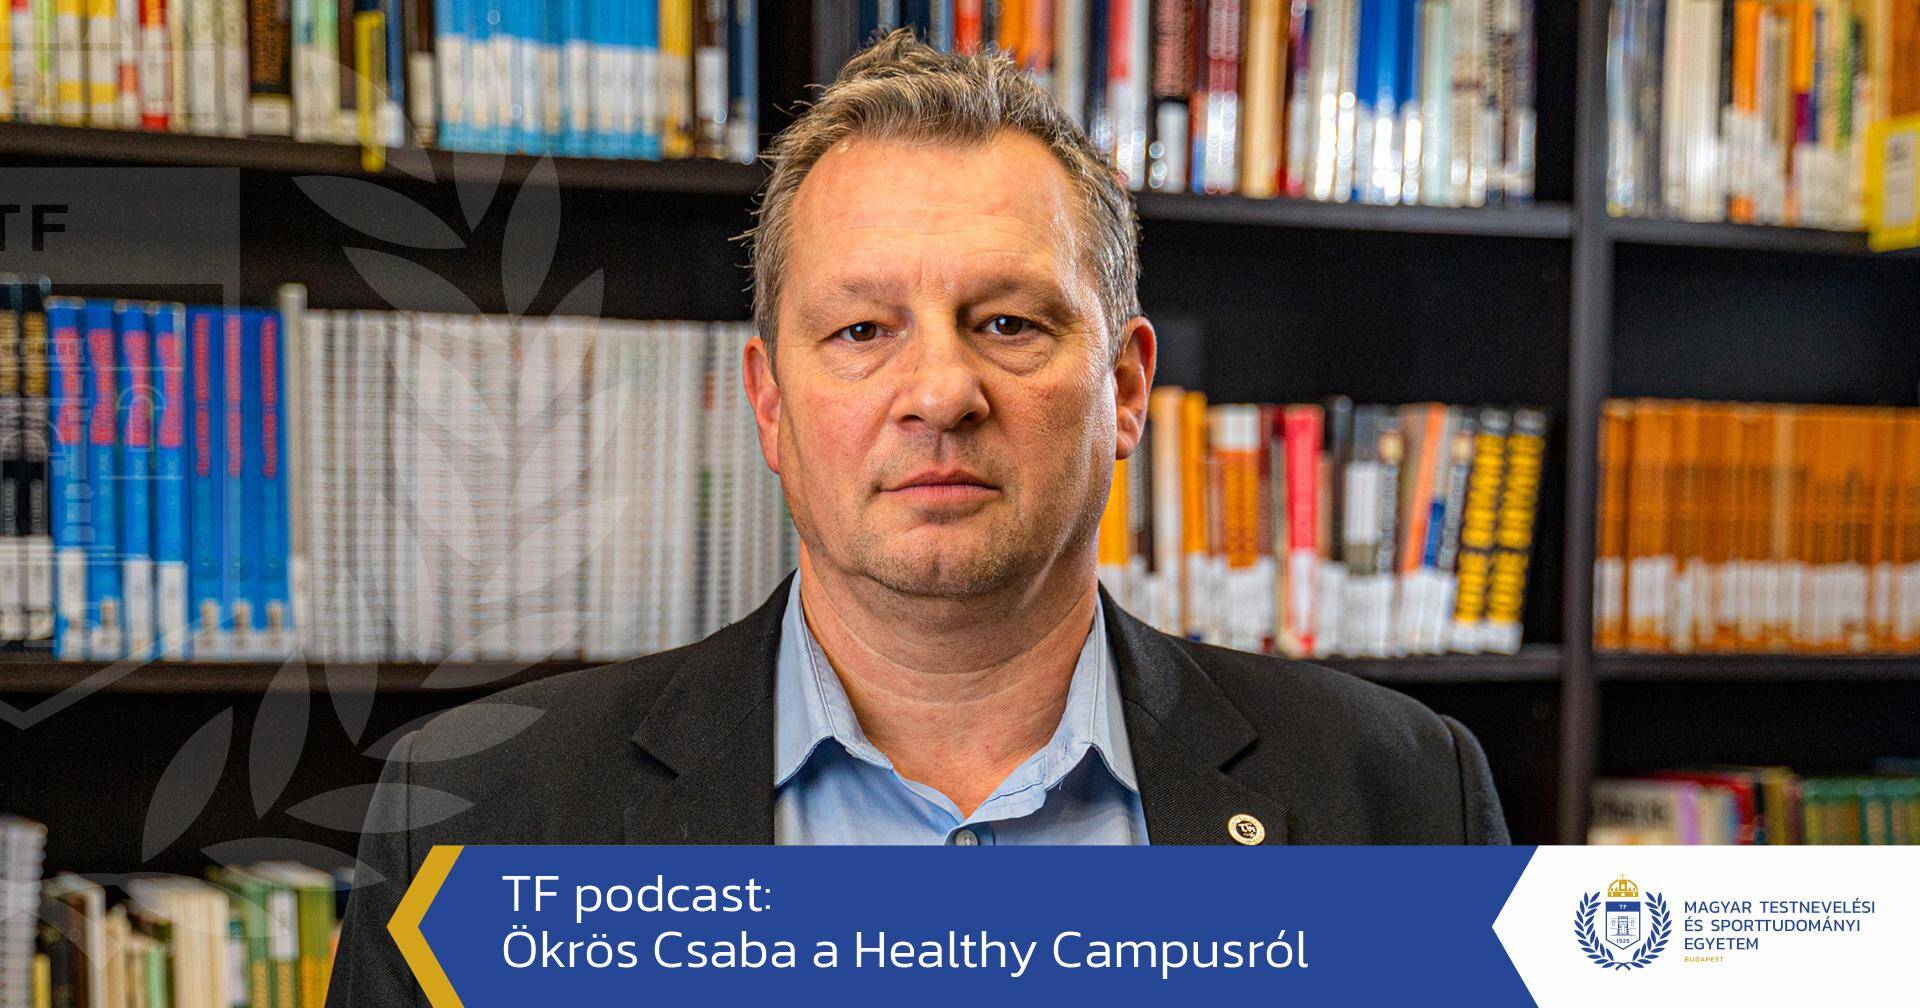 Ökrös Csaba a Healthy Campusról – podcast